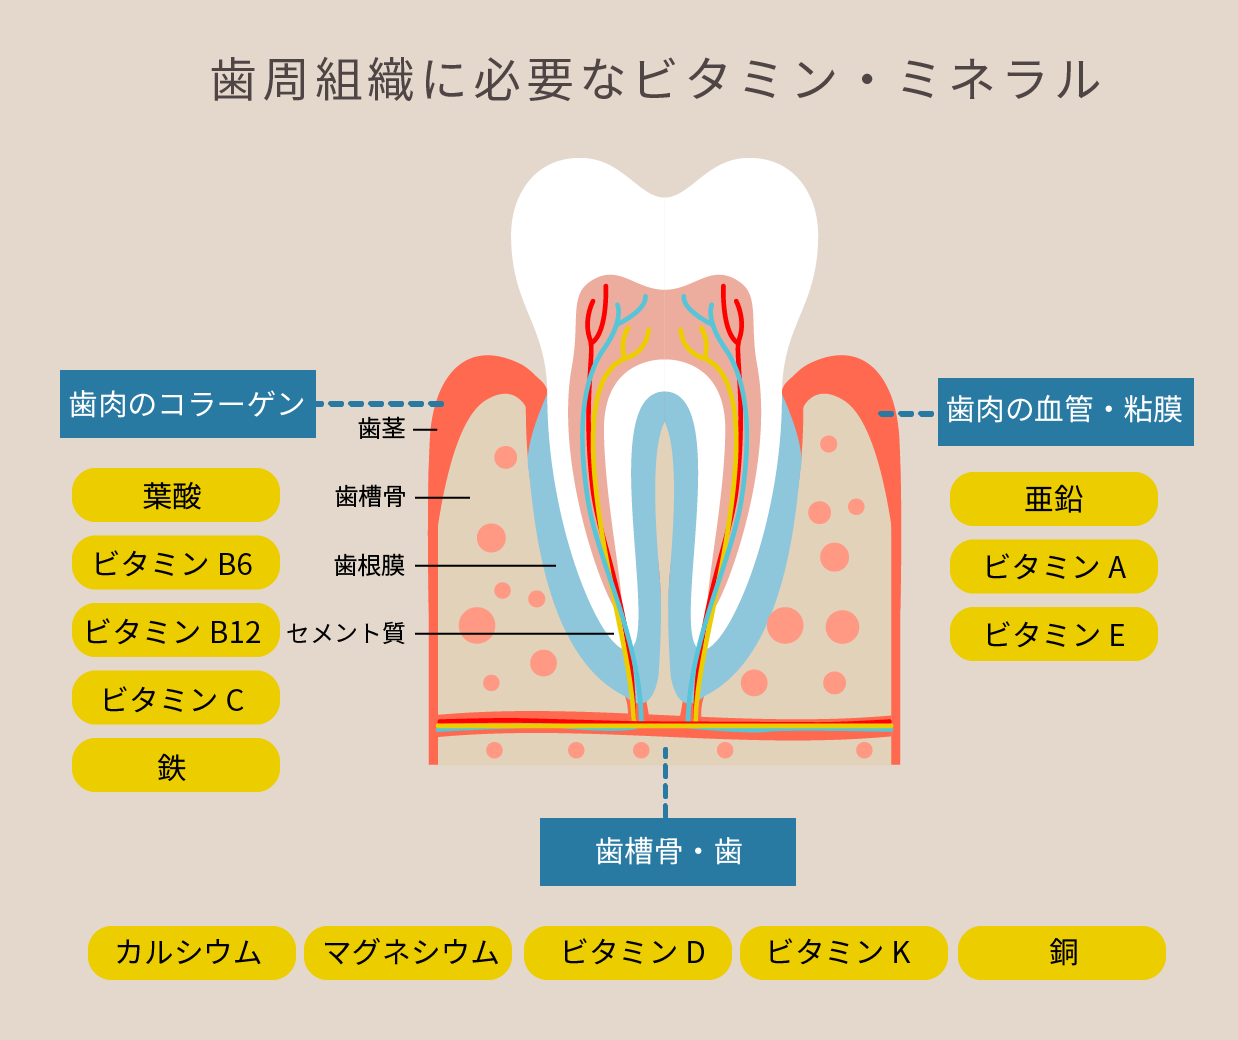 歯周組織に必要なビタミン・ミネラル図解。歯のコラーゲンは葉酸、ビタミンB6、ビタミンB12、ビタミン、C鉄。歯肉の血管・粘膜は亜鉛、ビタミンA、ビタミンE。歯槽骨・歯はカルシウム、マグネシウム、ビタミンD、ビタミンK、銅によって作られている。